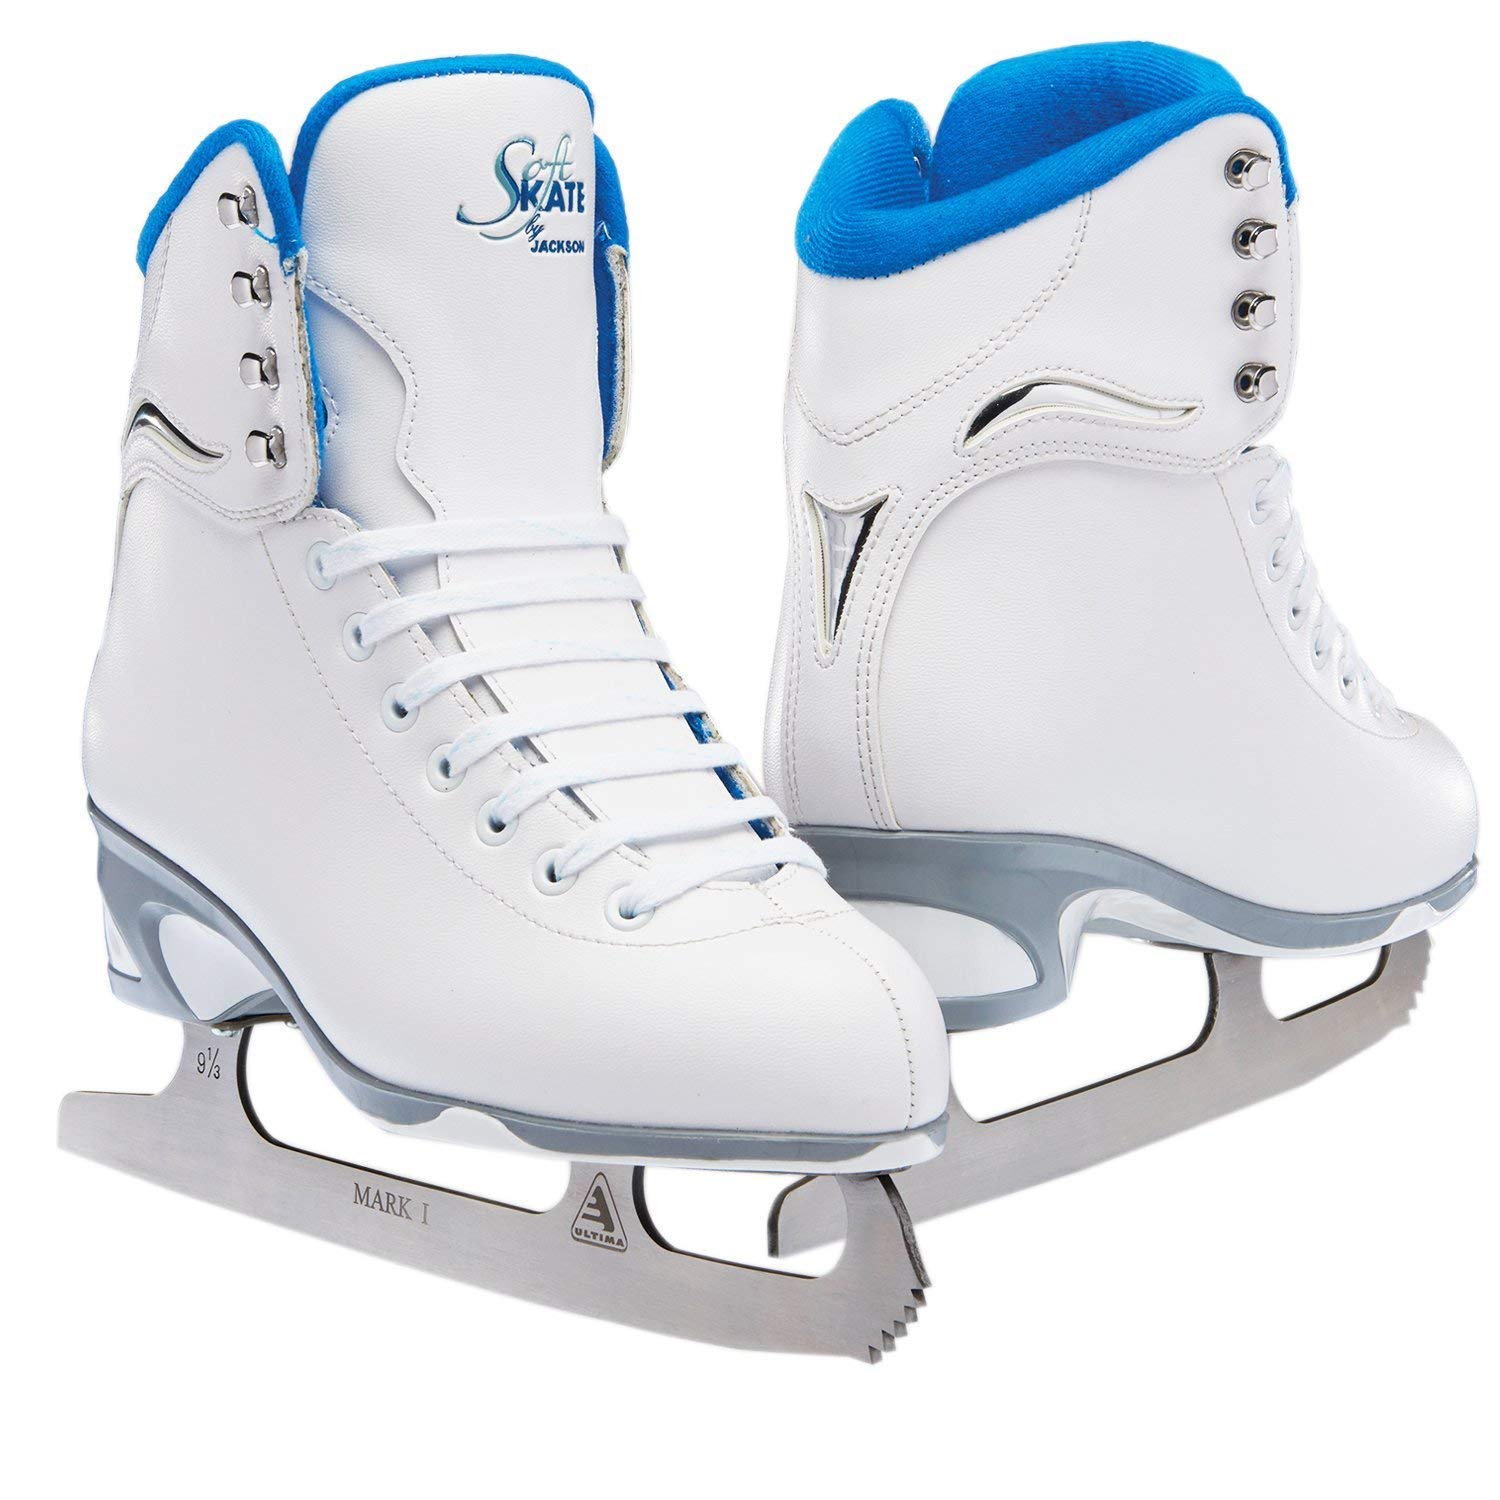 Jackson Ultima सॉफ्टस्केट महिला/लड़कियां फिगर स्केट...